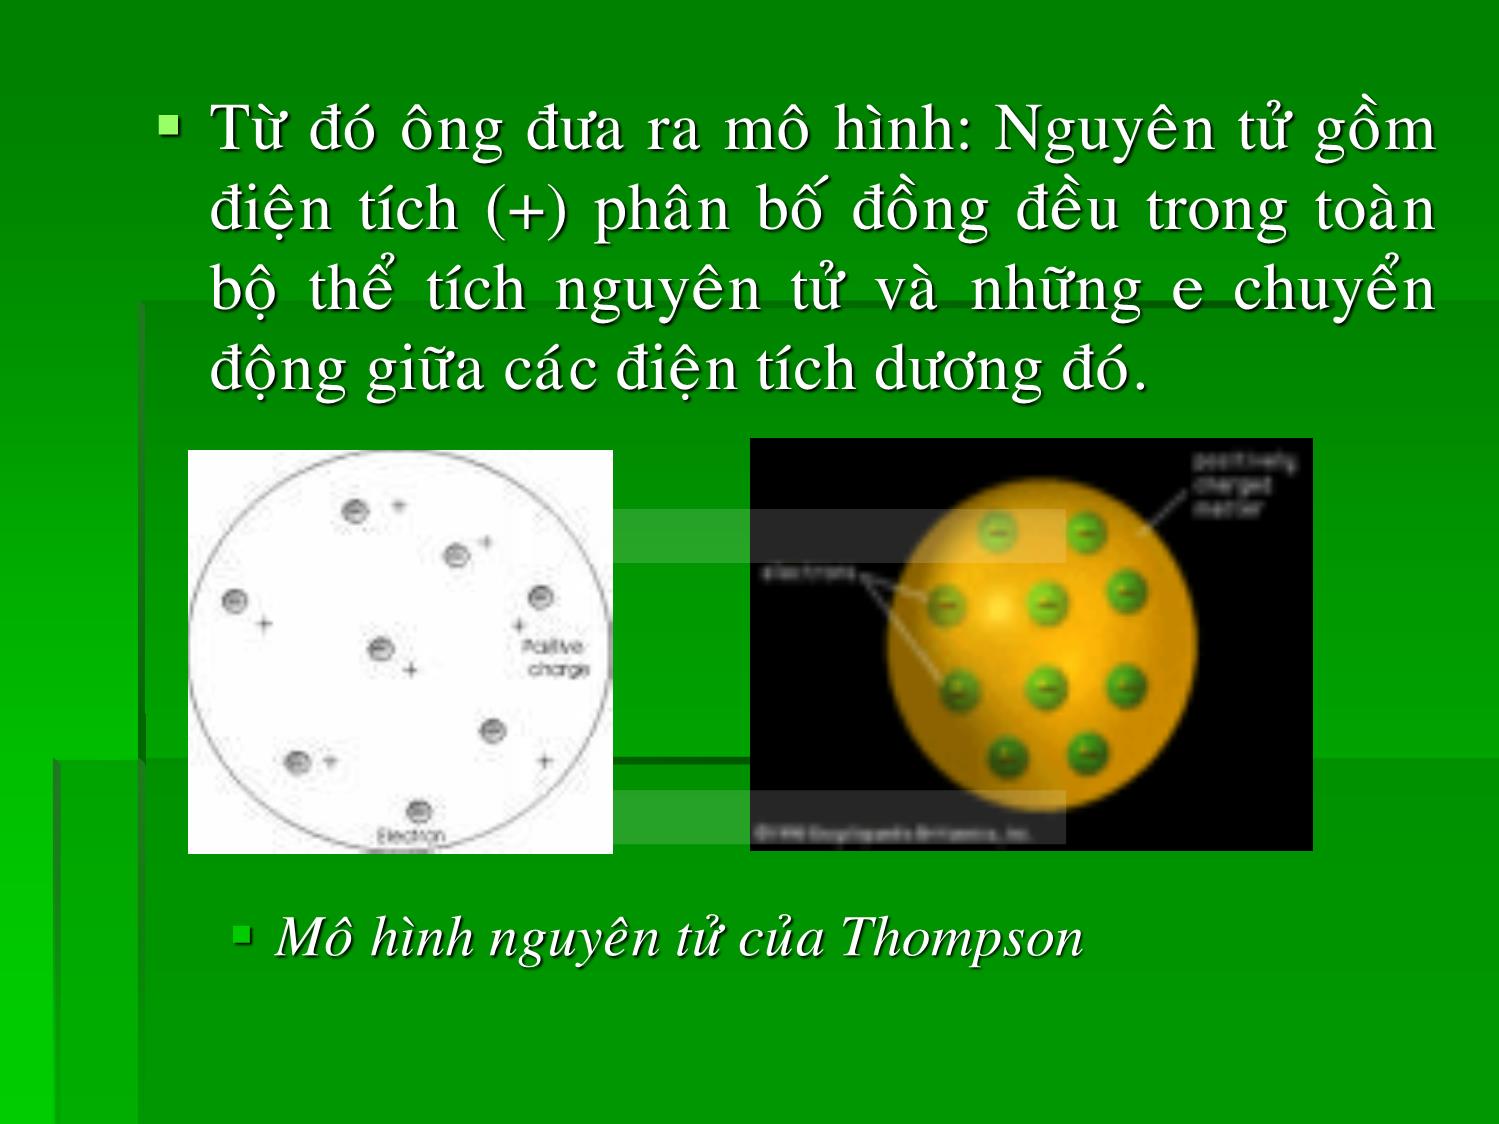 Bài giảng Hóa đại cương - Chương 2: Nguyên tử và quang phổ nguyên tử - Huỳnh Kỳ Phương Hạ trang 8